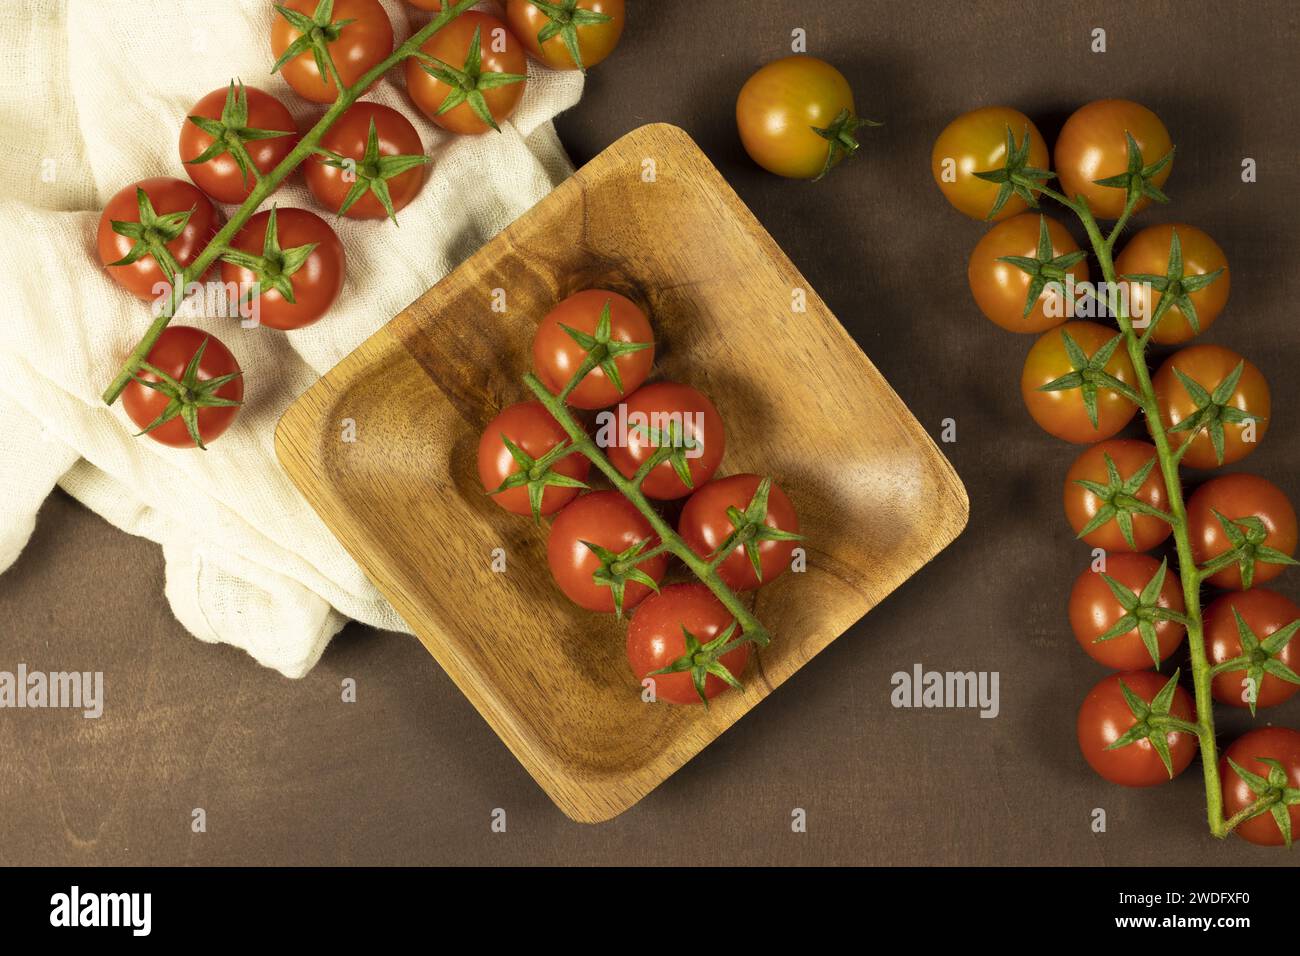 Composition photographique de tomates cerises Banque D'Images